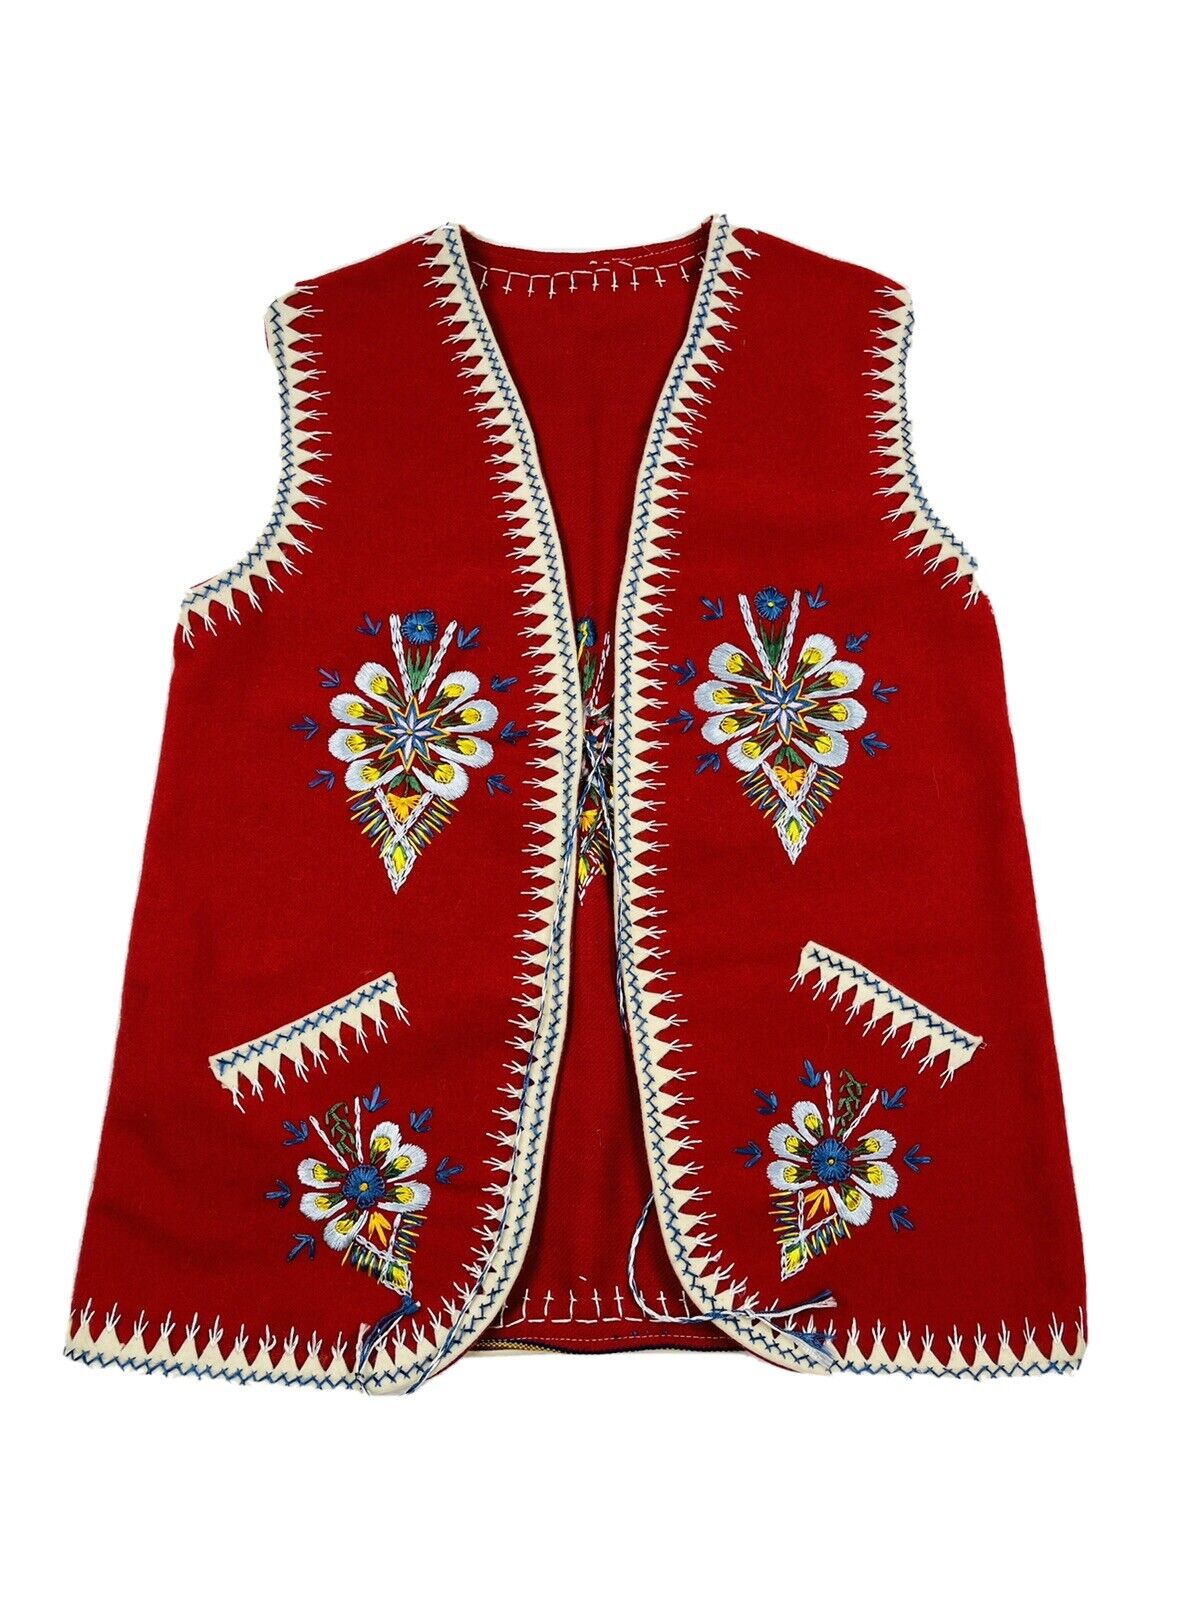 VTG Traditional Polish Folk Art Felted Floral Stitched Vest Jacket Red